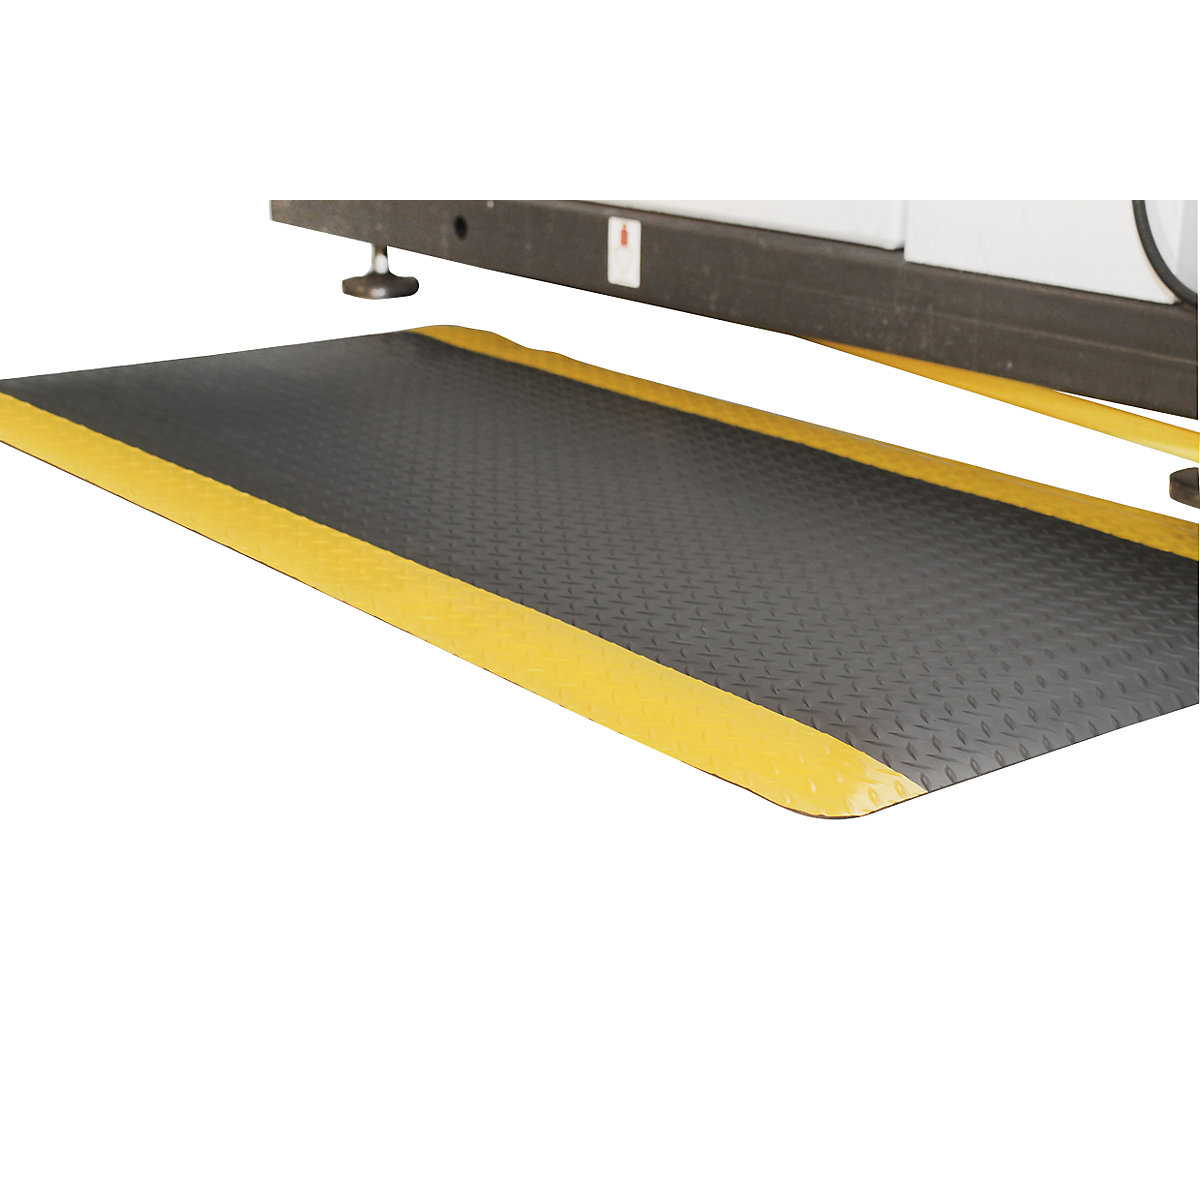 DECKPLATE anti-fatigue matting, cut to order, black / yellow, per m. x 900 mm, max. 18.3 m